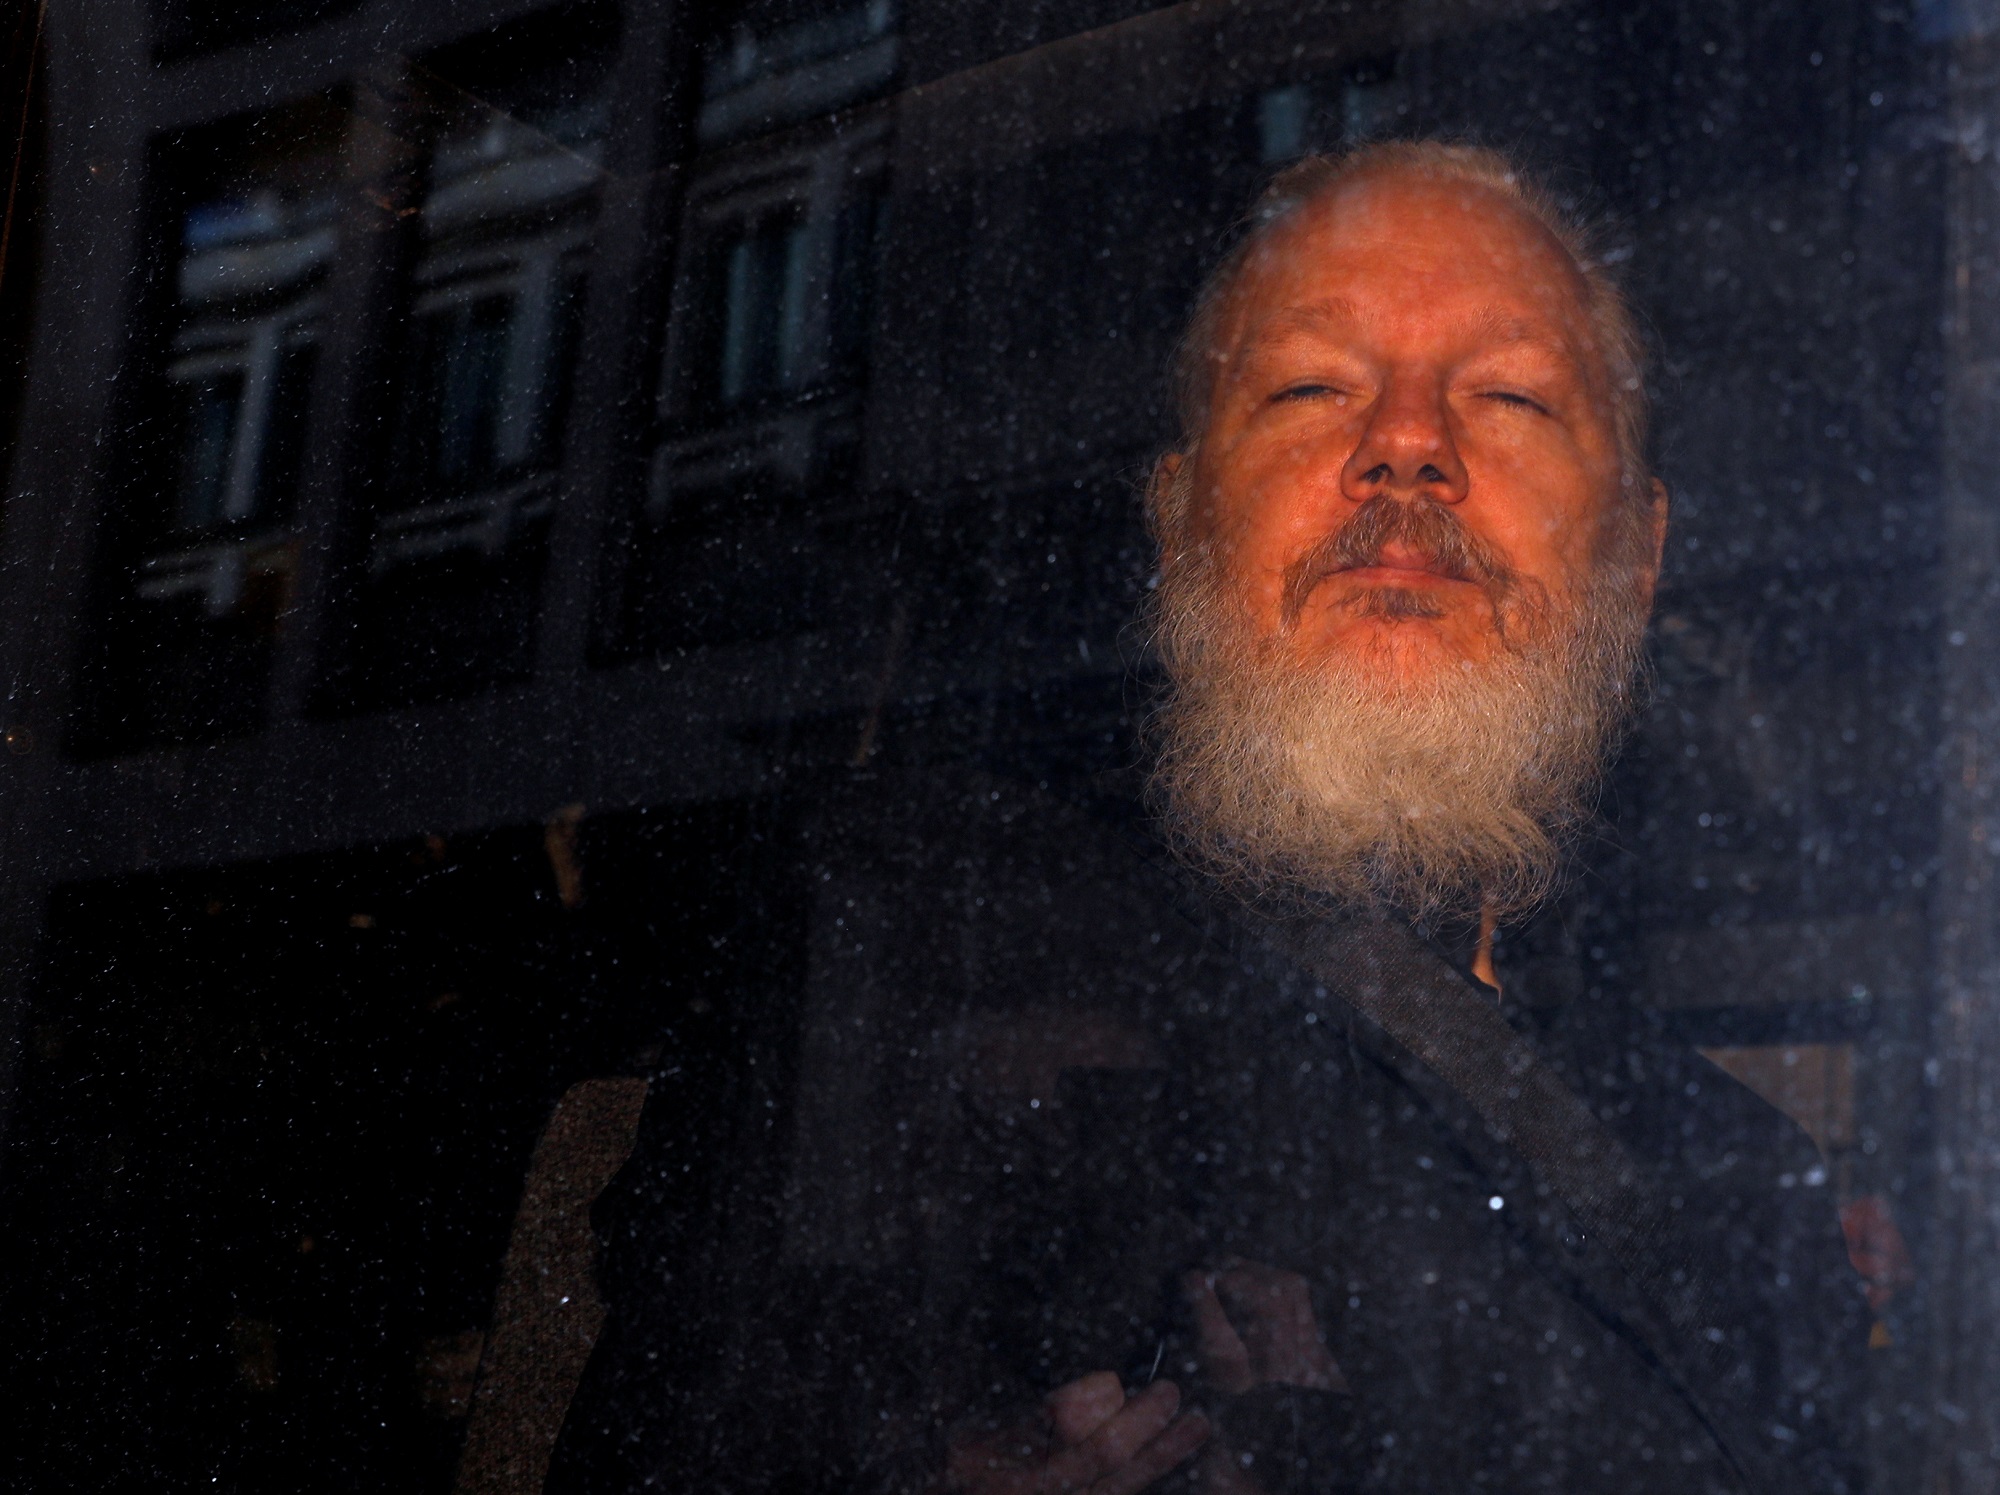 Assange, demasiado enfermo para una videoconferencia sobre su extradición